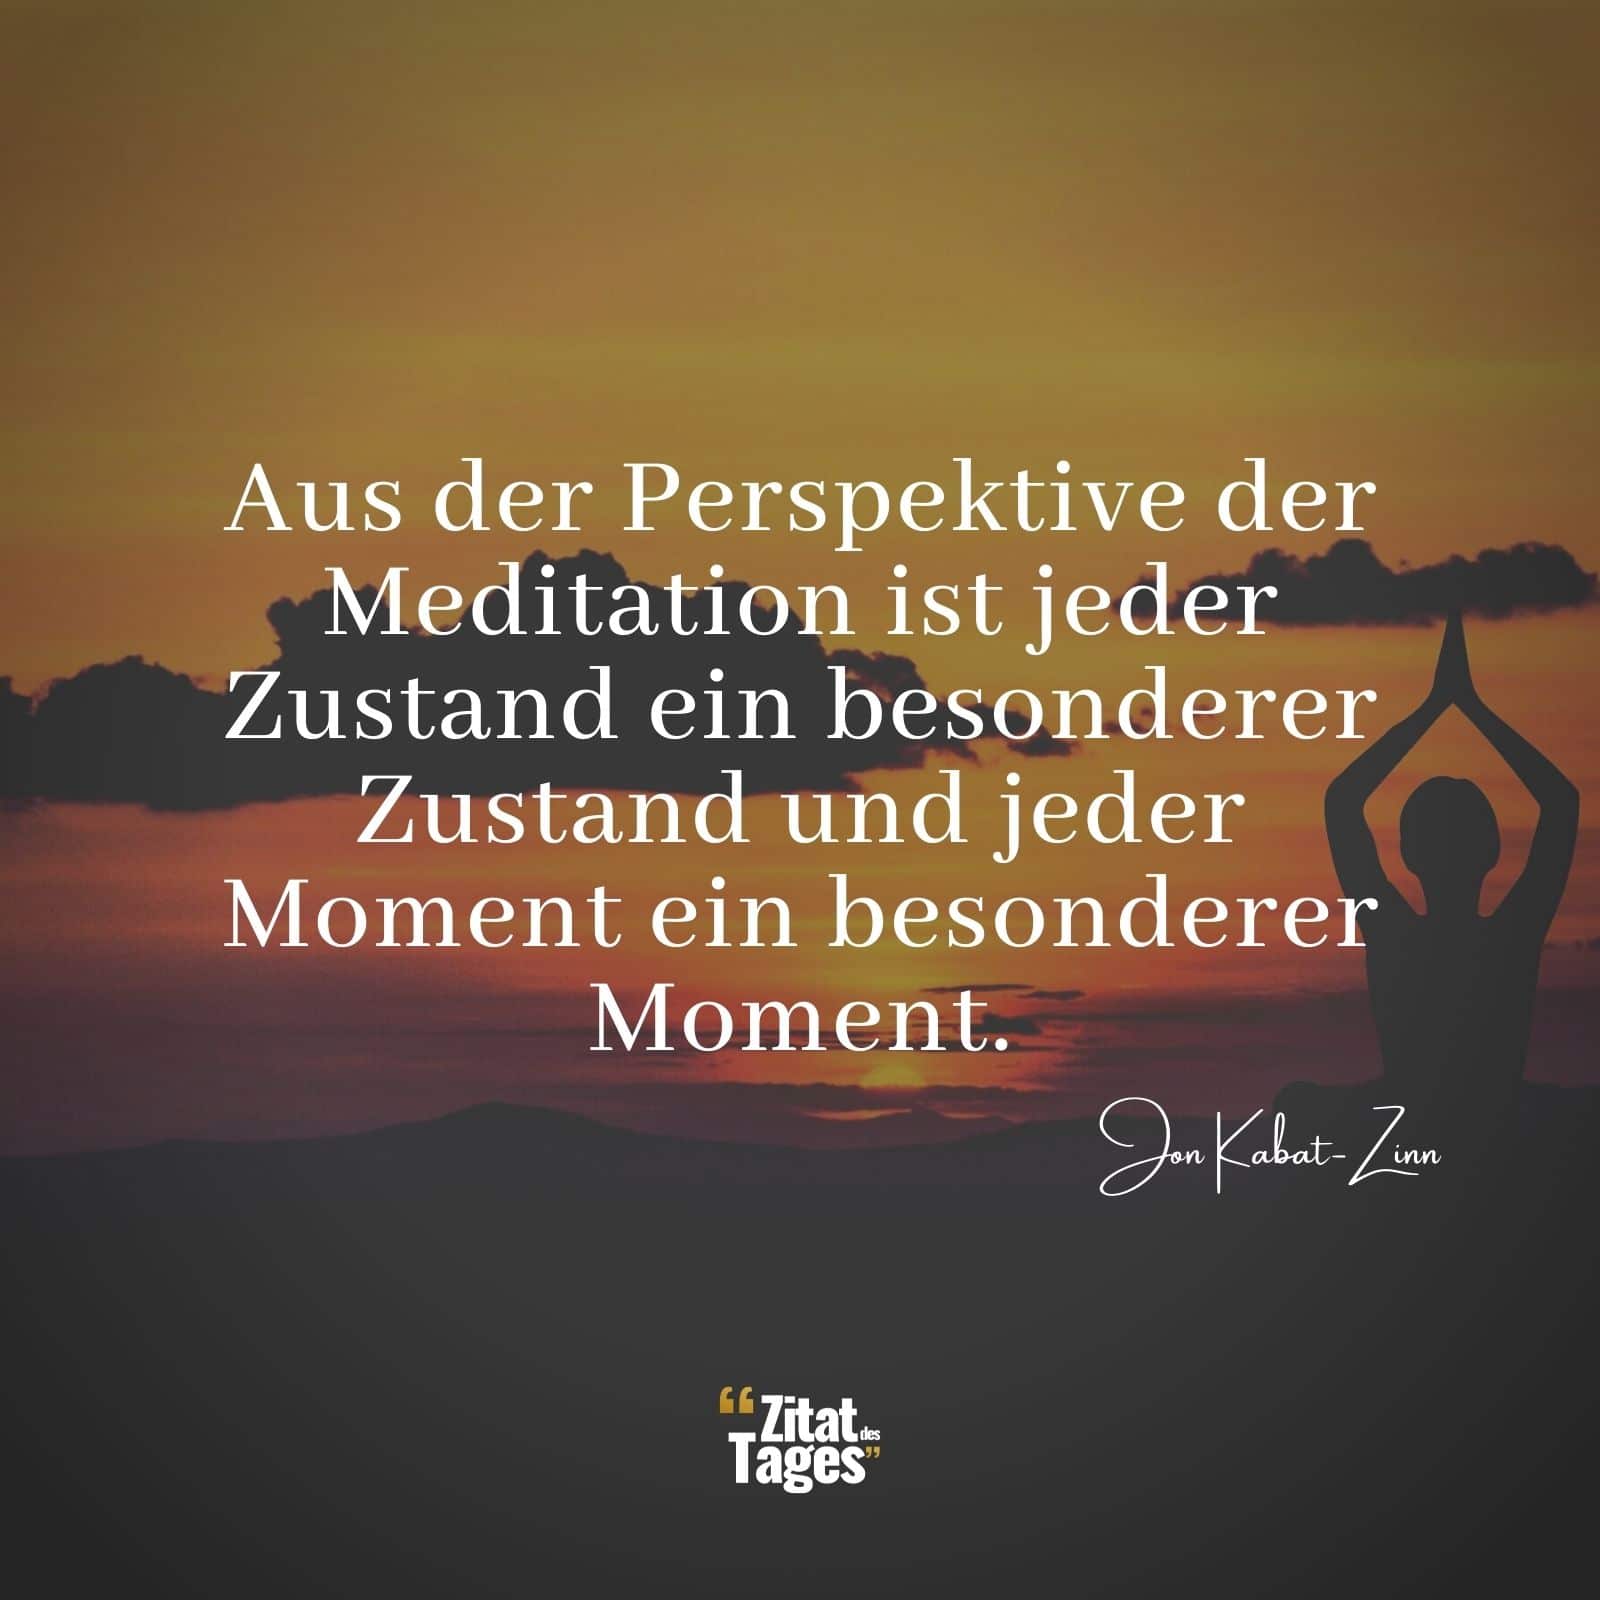 Aus der Perspektive der Meditation ist jeder Zustand ein besonderer Zustand und jeder Moment ein besonderer Moment. - Jon Kabat-Zinn